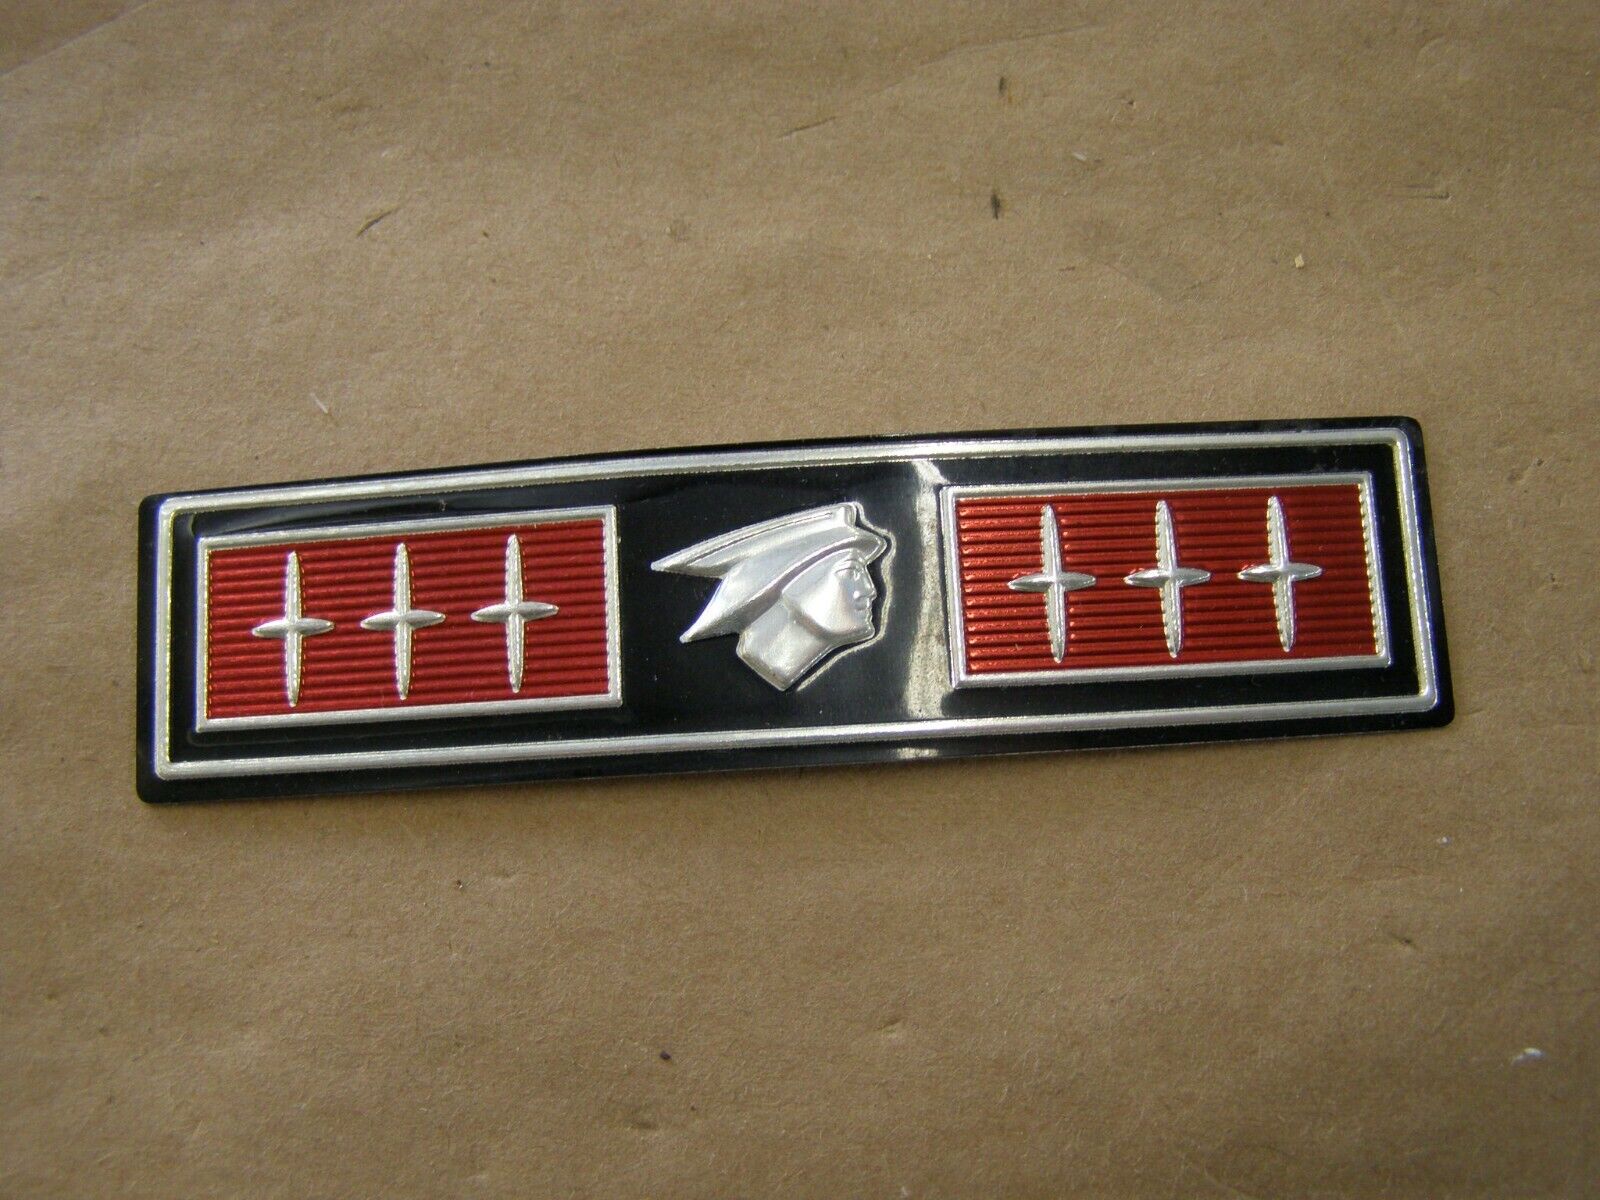 NOS OEM Ford 1969 Mercury Montego Grille Emblem Foil Insert Ornament